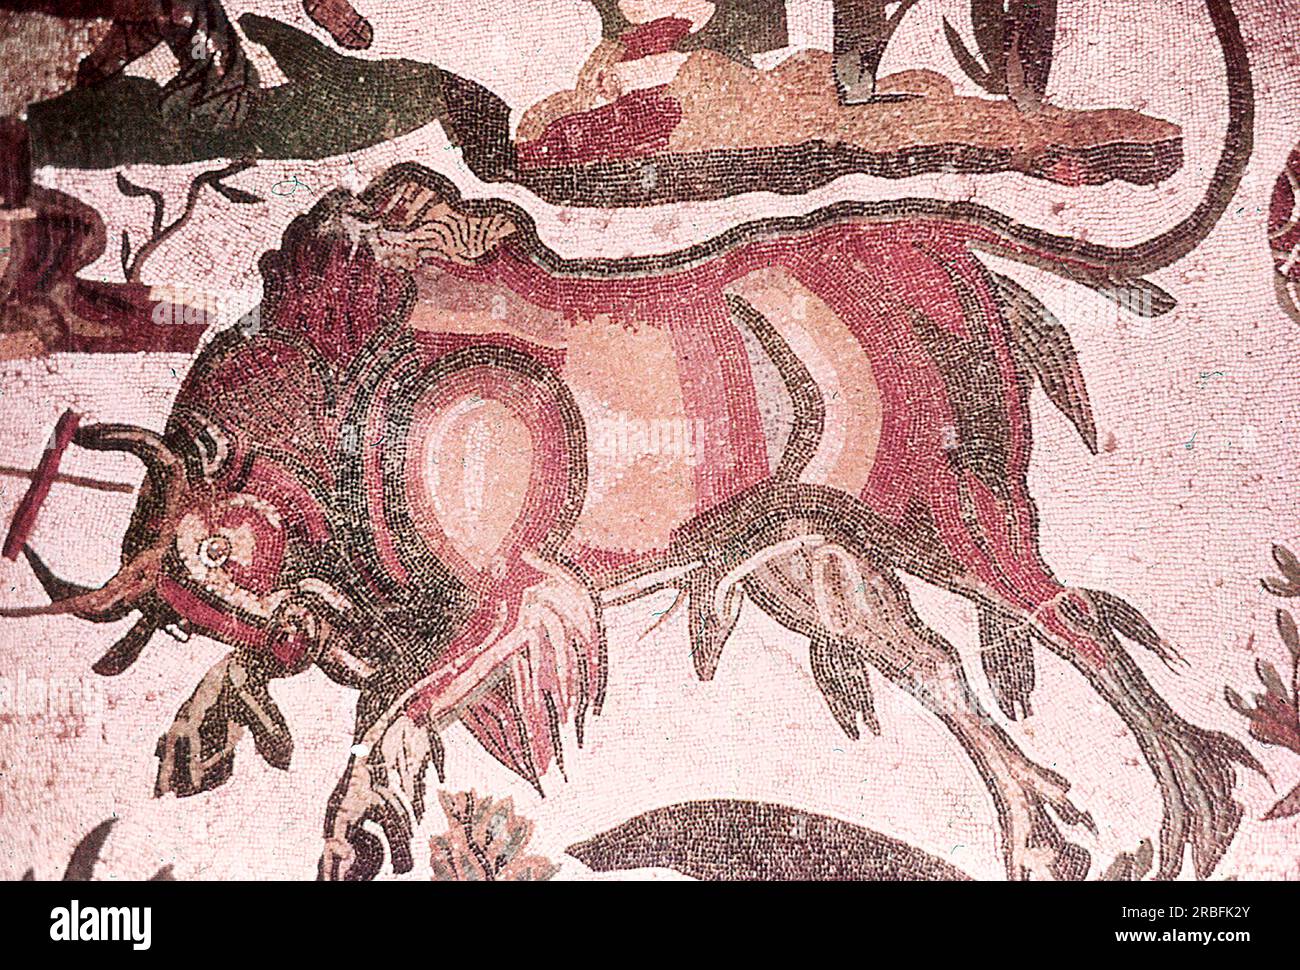 Dieses Foto eines Mosaiks mit der Großen Jagd (Bison) wurde im Sommer 1970 auf der Piazza Armerina in Sizilien aufgenommen. Die Piazza Armerina beherbergt die römische Villa del Casale und ihre berühmten Mosaiken, die „besten Mosaike in situ in der römischen Welt“, wie von der UNESCO beschrieben, die sie 1997 in ihre Liste des Weltkulturerbes aufgenommen hat. Villa Romana war eine üppige Patrizier-Residenz, die im Zentrum eines riesigen Latifundiums (Landwirtschaftsgelände) am Ende des 4. Jahrhunderts n. Chr. erbaut wurde. Es wird angenommen, dass es einem Mitglied der römischen Senatorenaristokratie gehörte, der mit exotischen Tieren handelte. Th Stockfoto